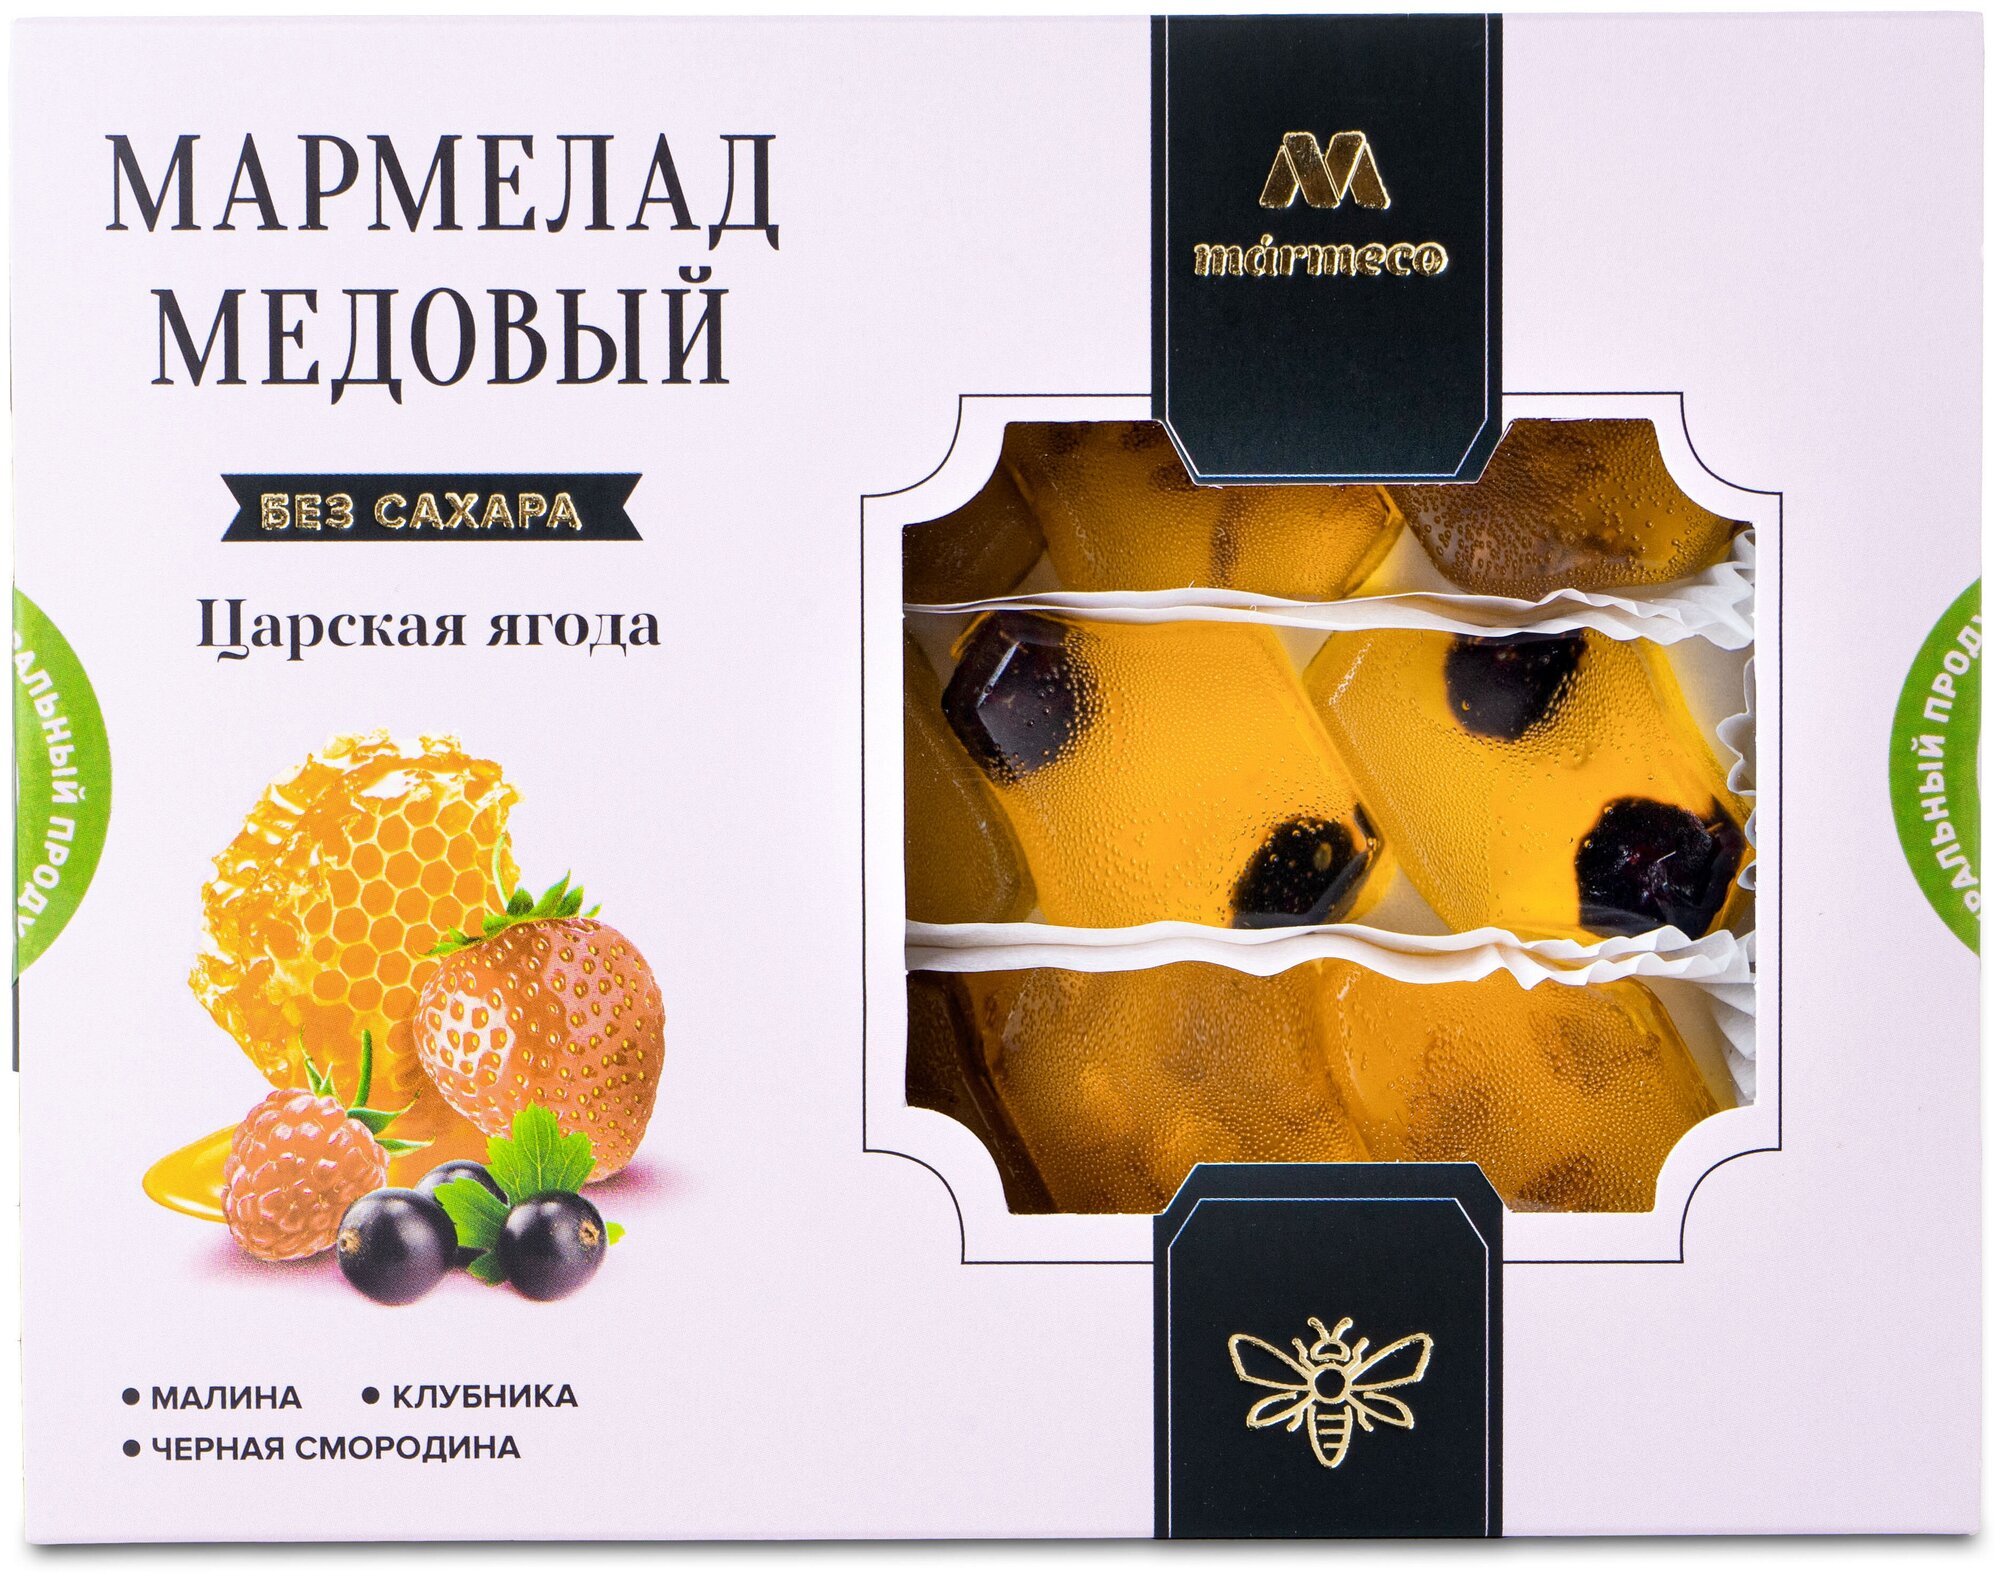 Мармелад медовый "Царская ягода" (с сублимированной малиной, клубникой, чёрной смородиной) 200г